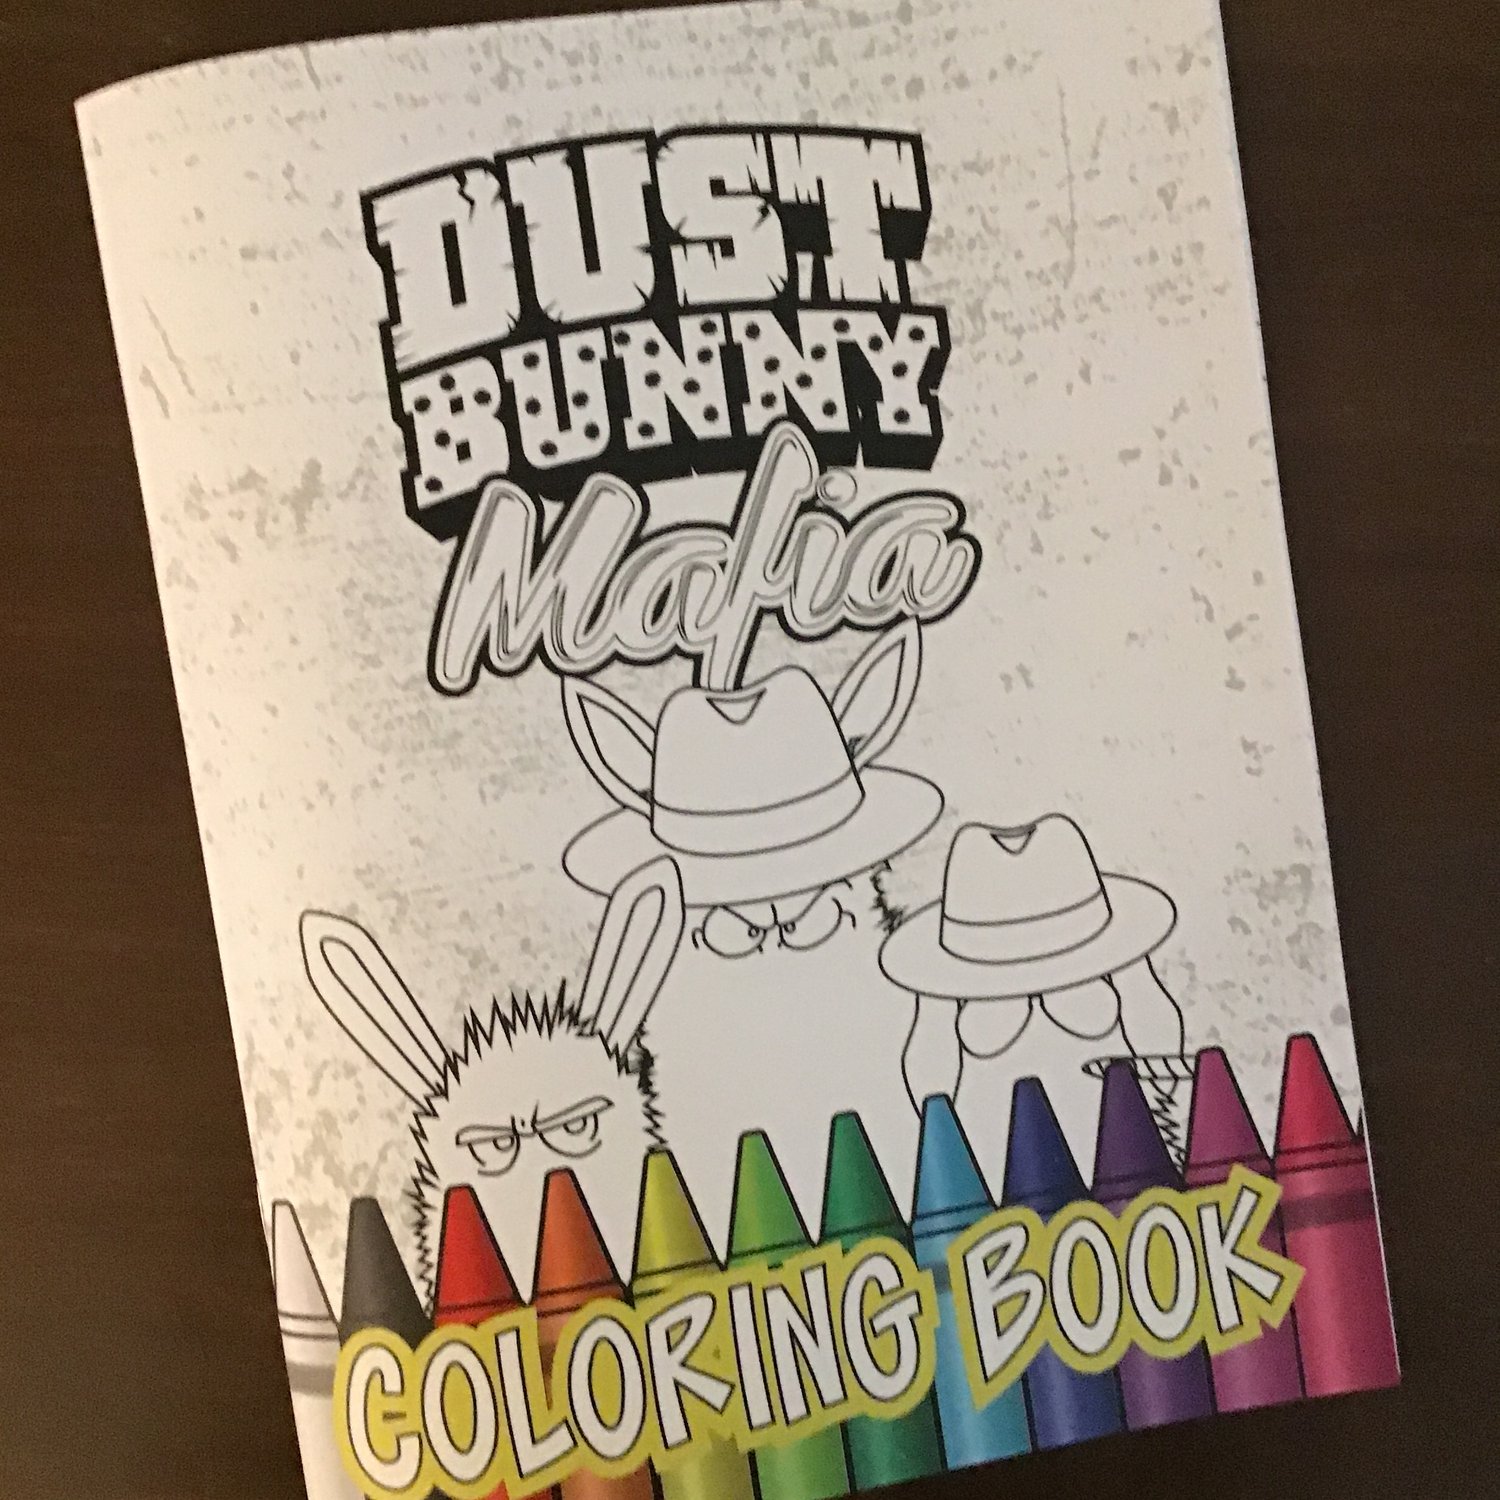 Dust Bunny Mafia Coloring Book (Volume 1)